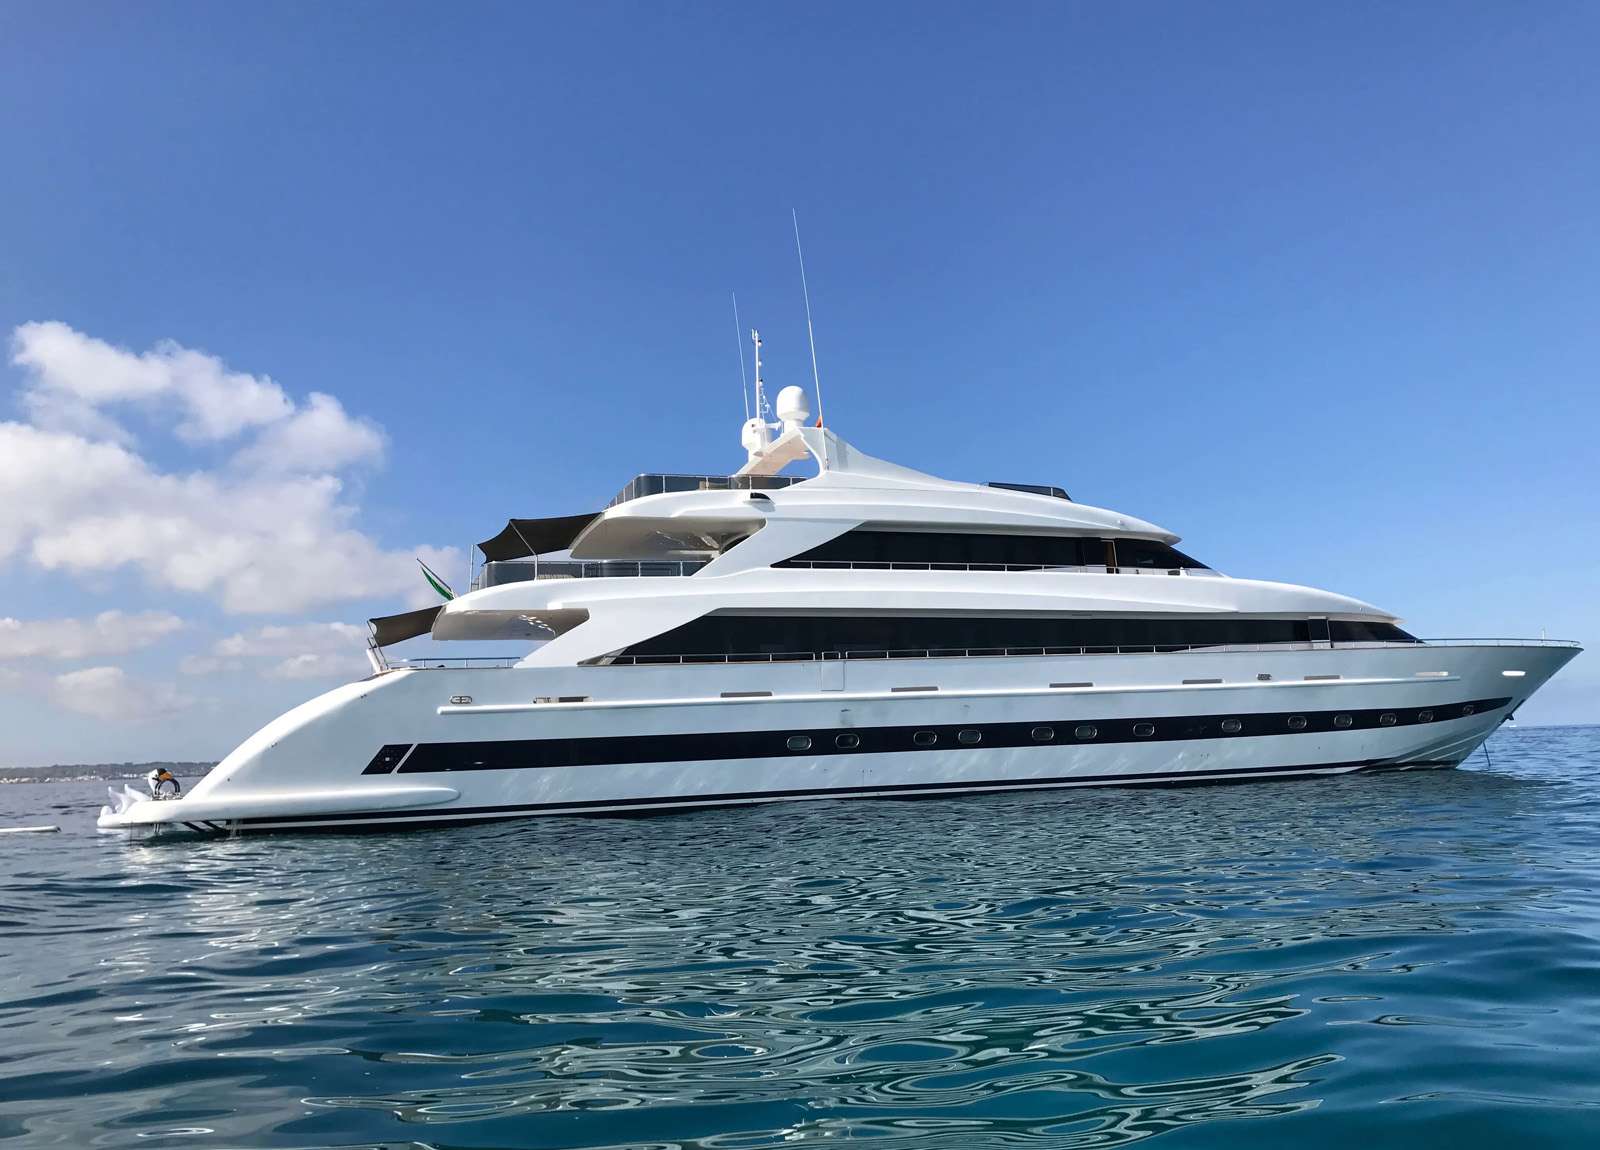 luxury-yacht-villa-sul-mare-44m-western-mediterranean